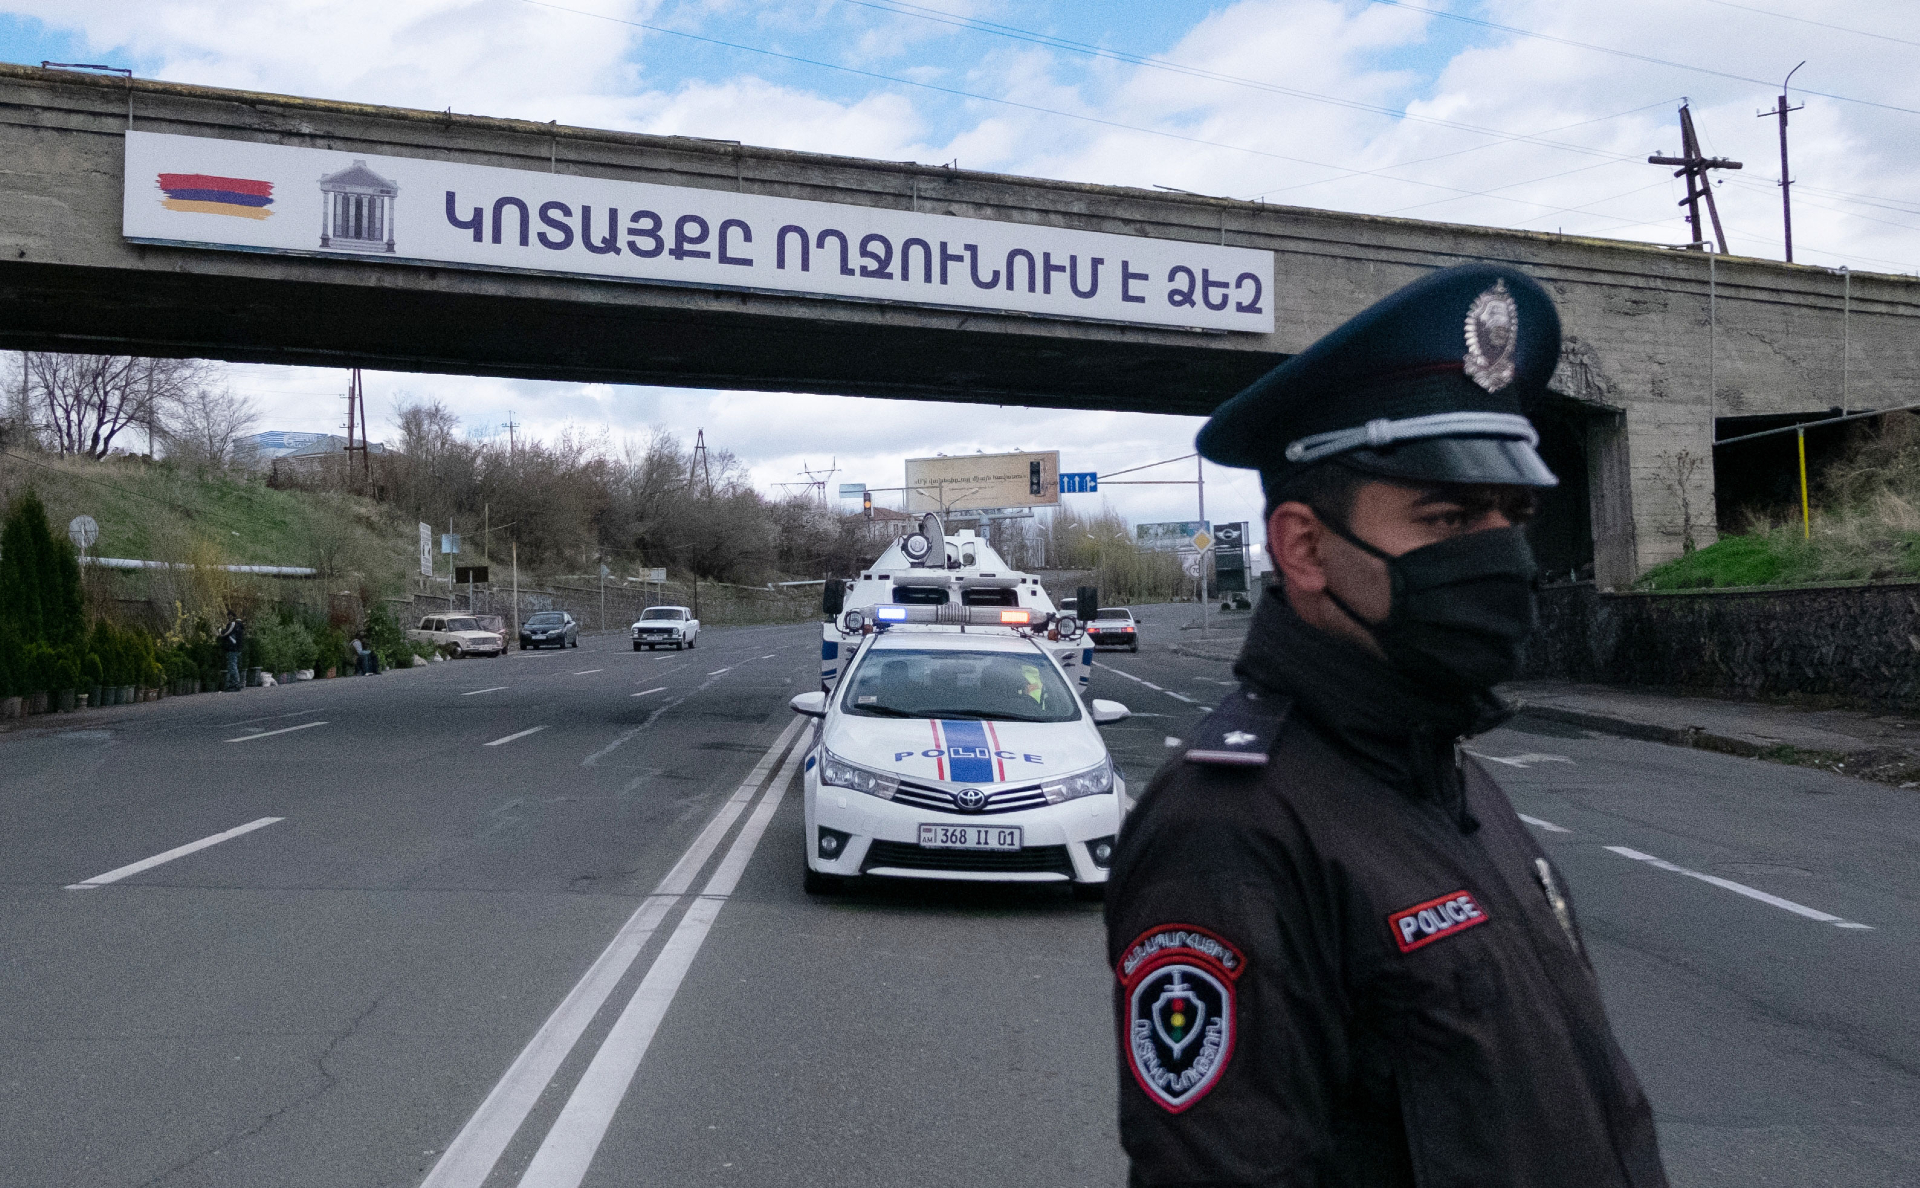 Запрет на въезд иностранцев в Армению воздушным путем снят, но визу можно получить только в посольствах 